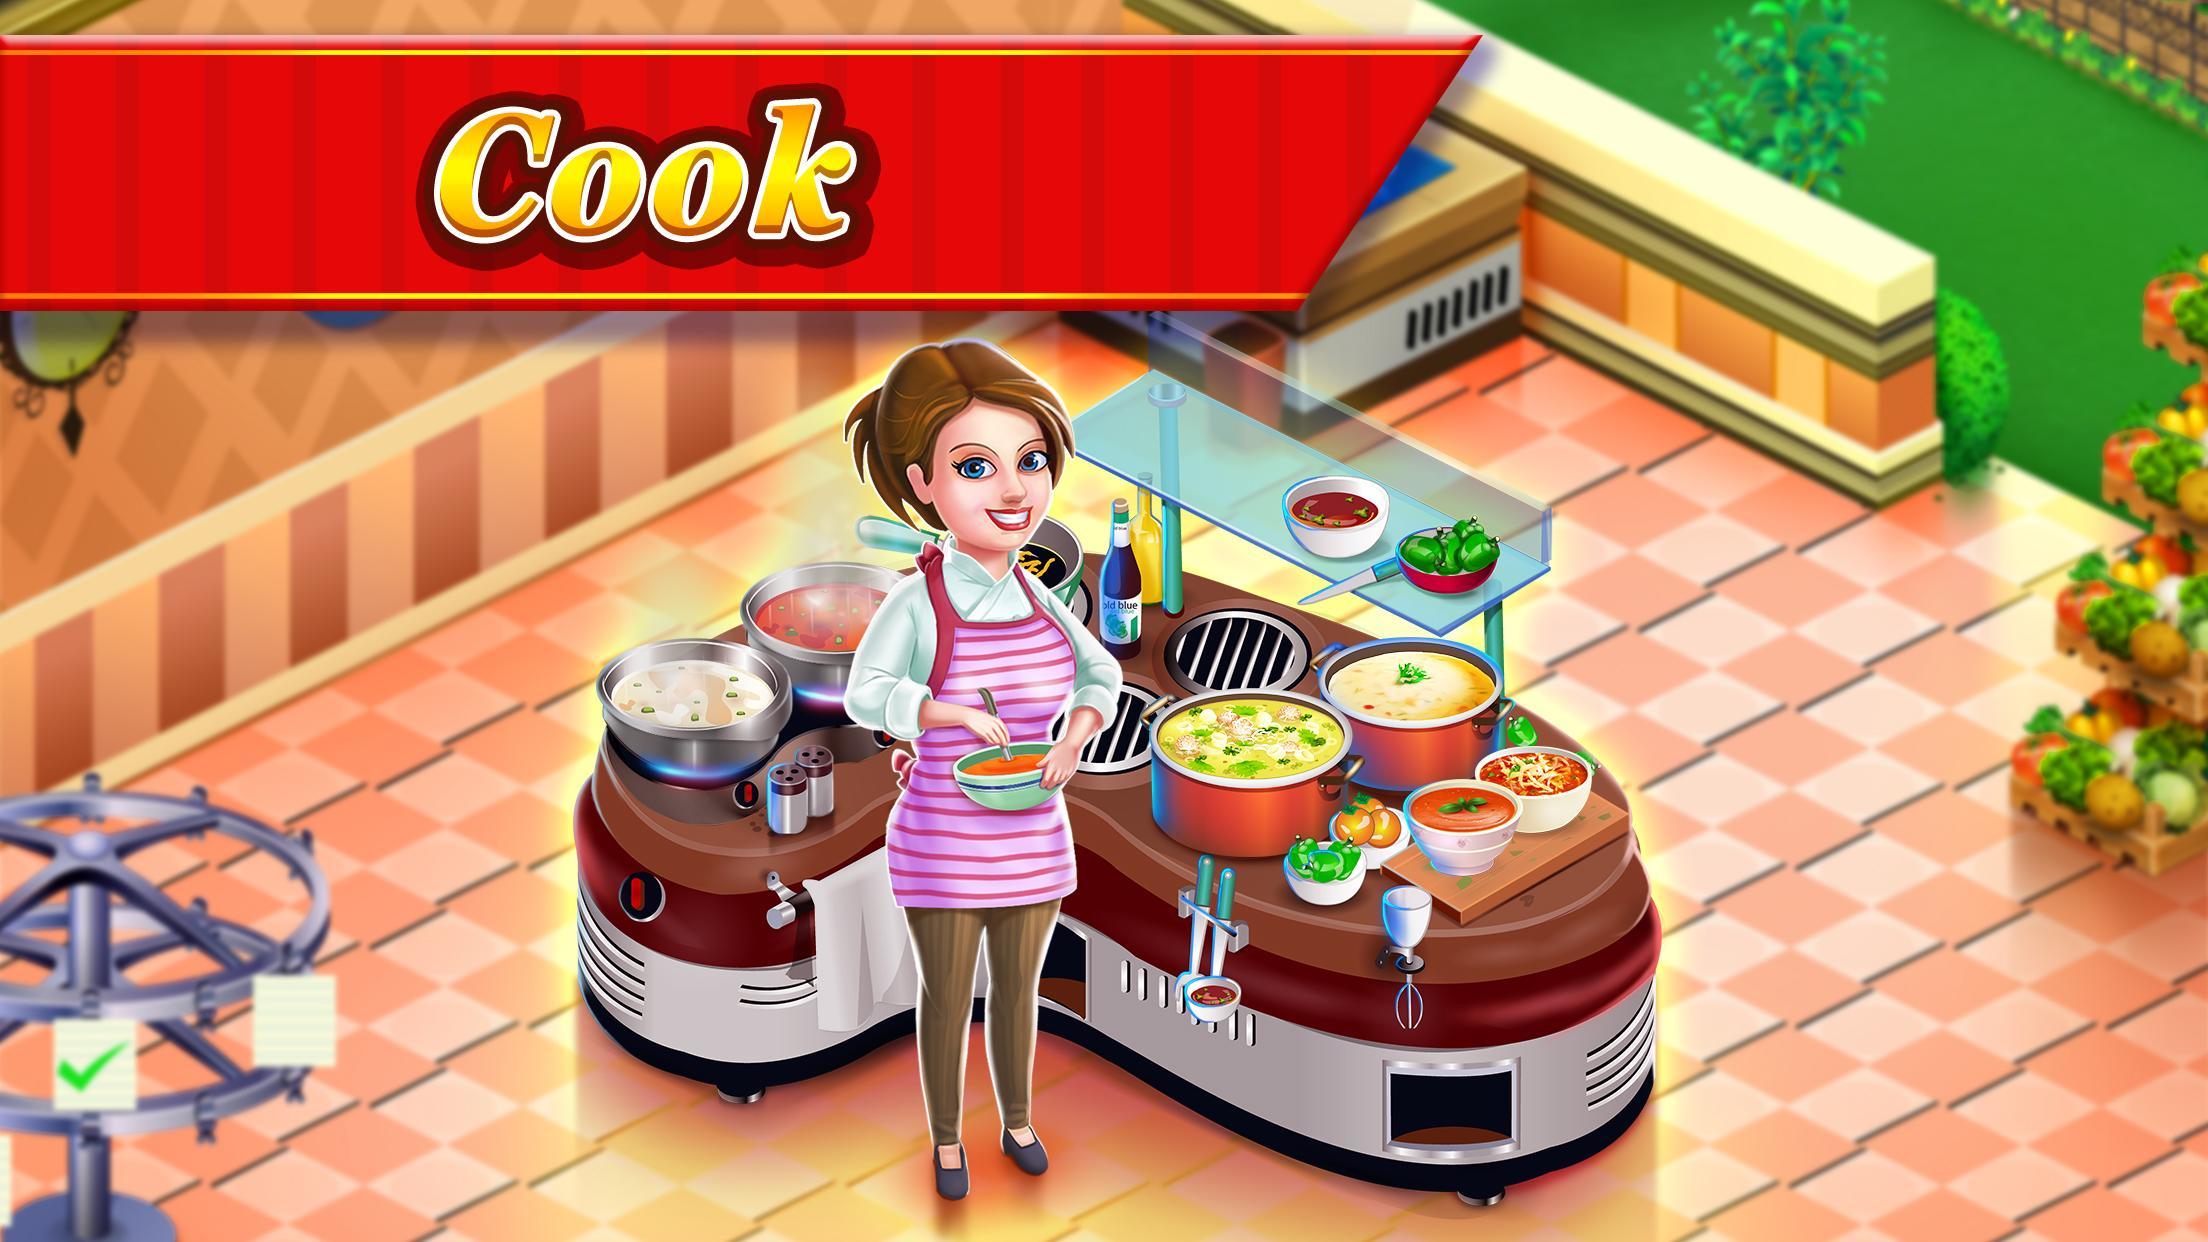 Screenshot 1 of Star Chef™: การทำอาหารในร้านอาหาร 2.25.54